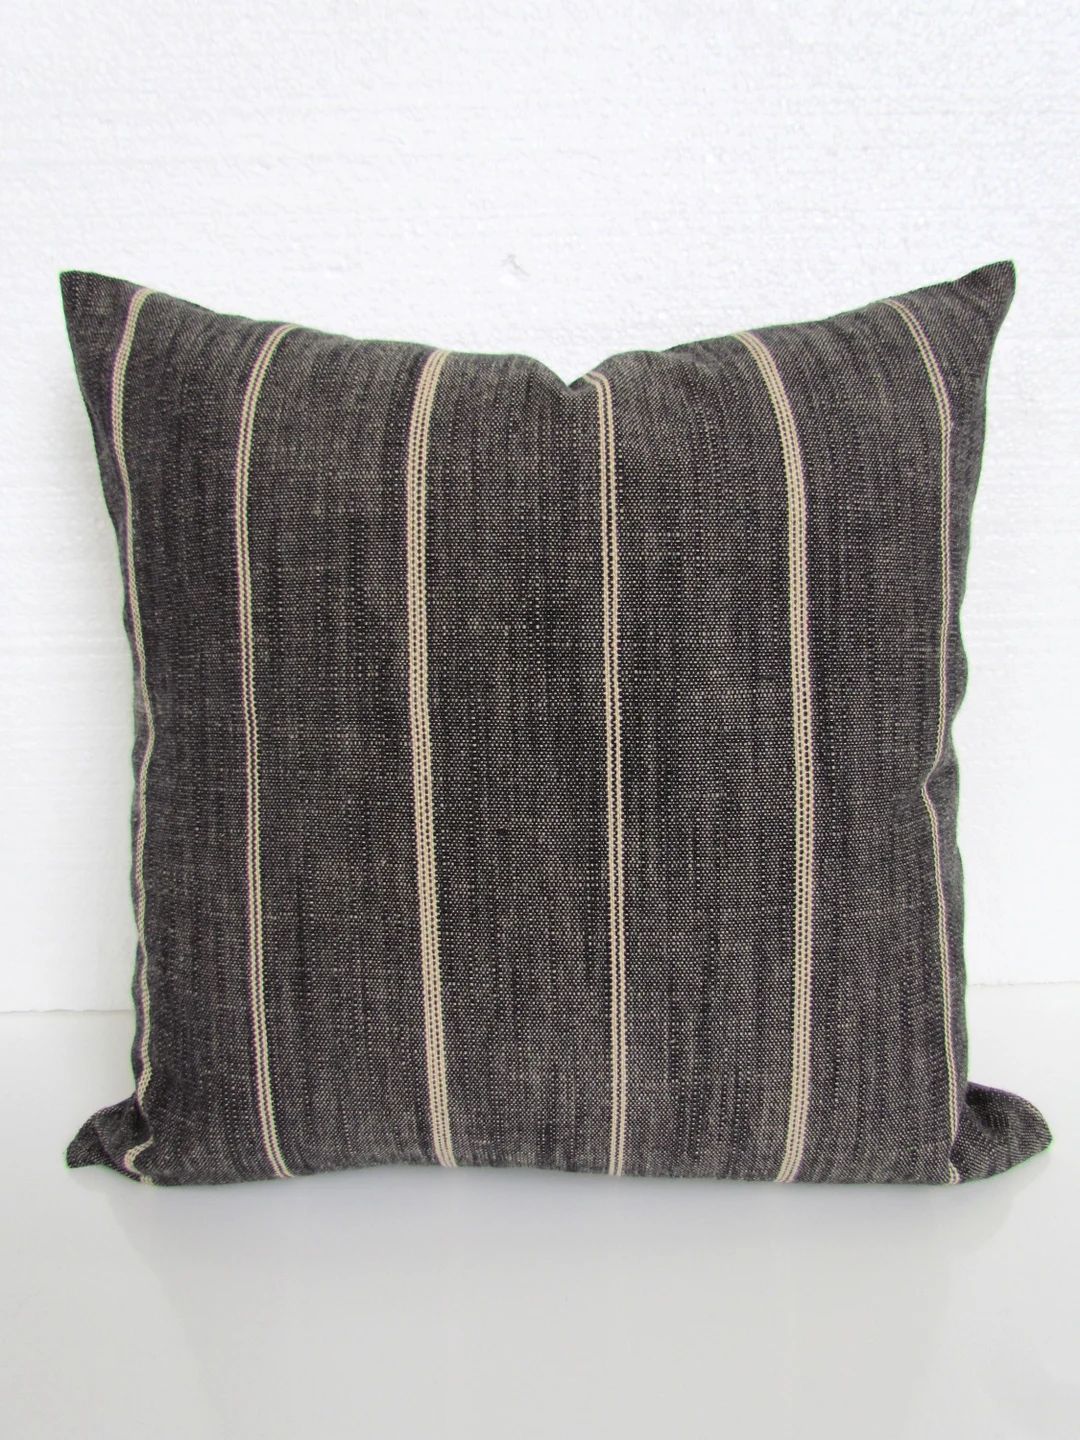 FARMHOUSE PILLOWS Charcoal Ticking stripe Throw Pillows Farm house Charcoal Pillows Black Pillow ... | Etsy (US)